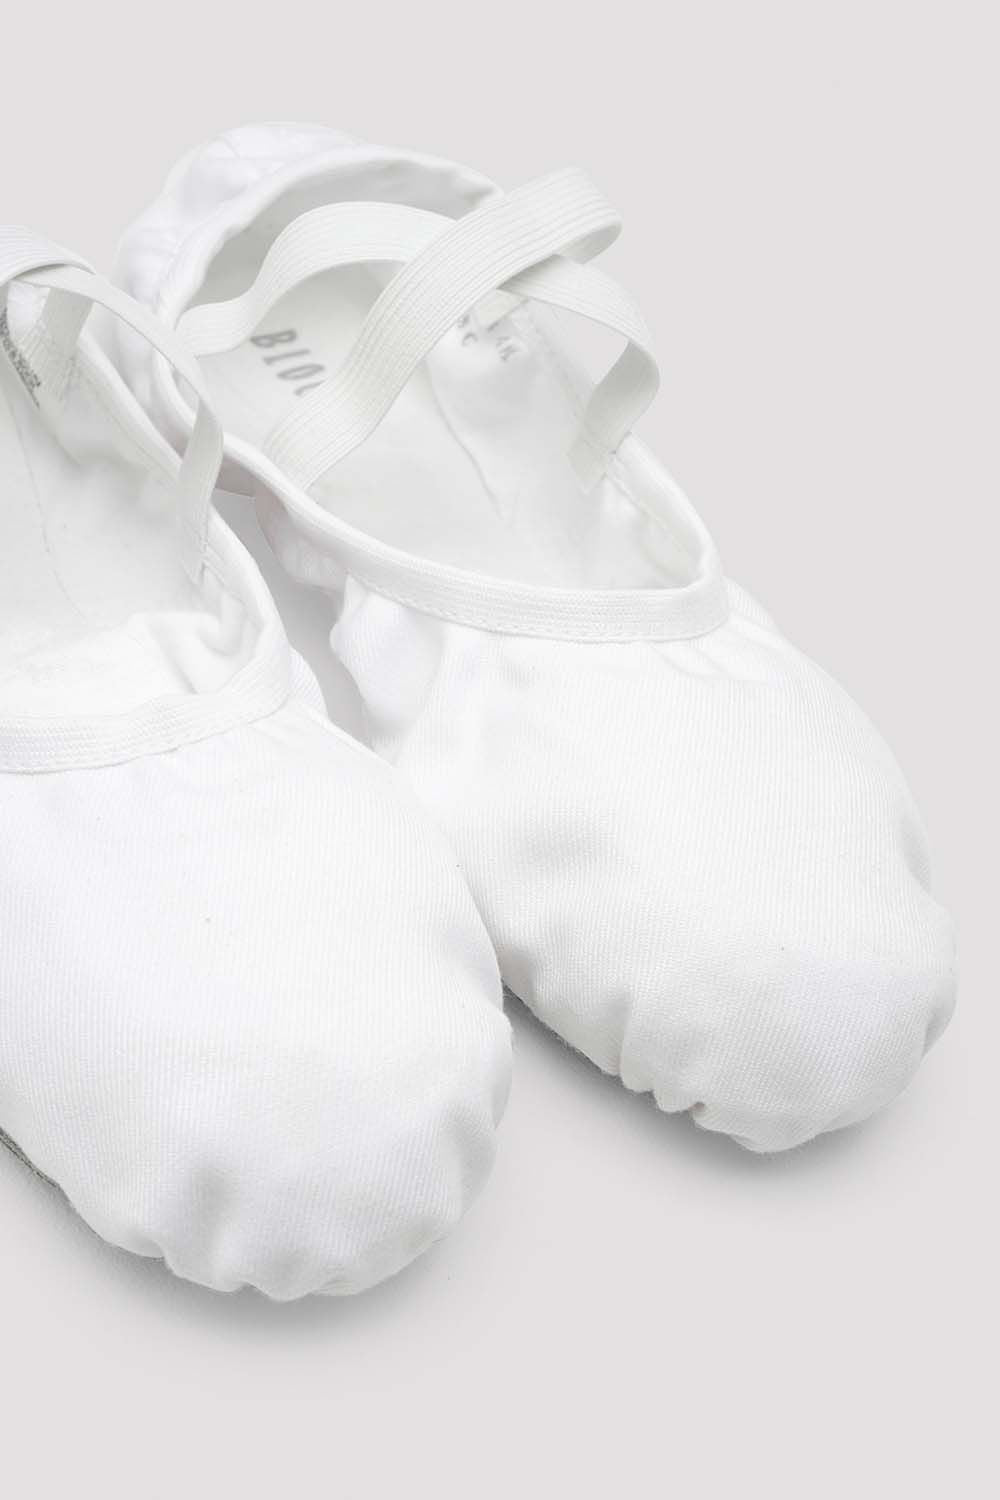 Bloch Performa Zapatillas Ballet para Comprar Online - Calzado Ballet